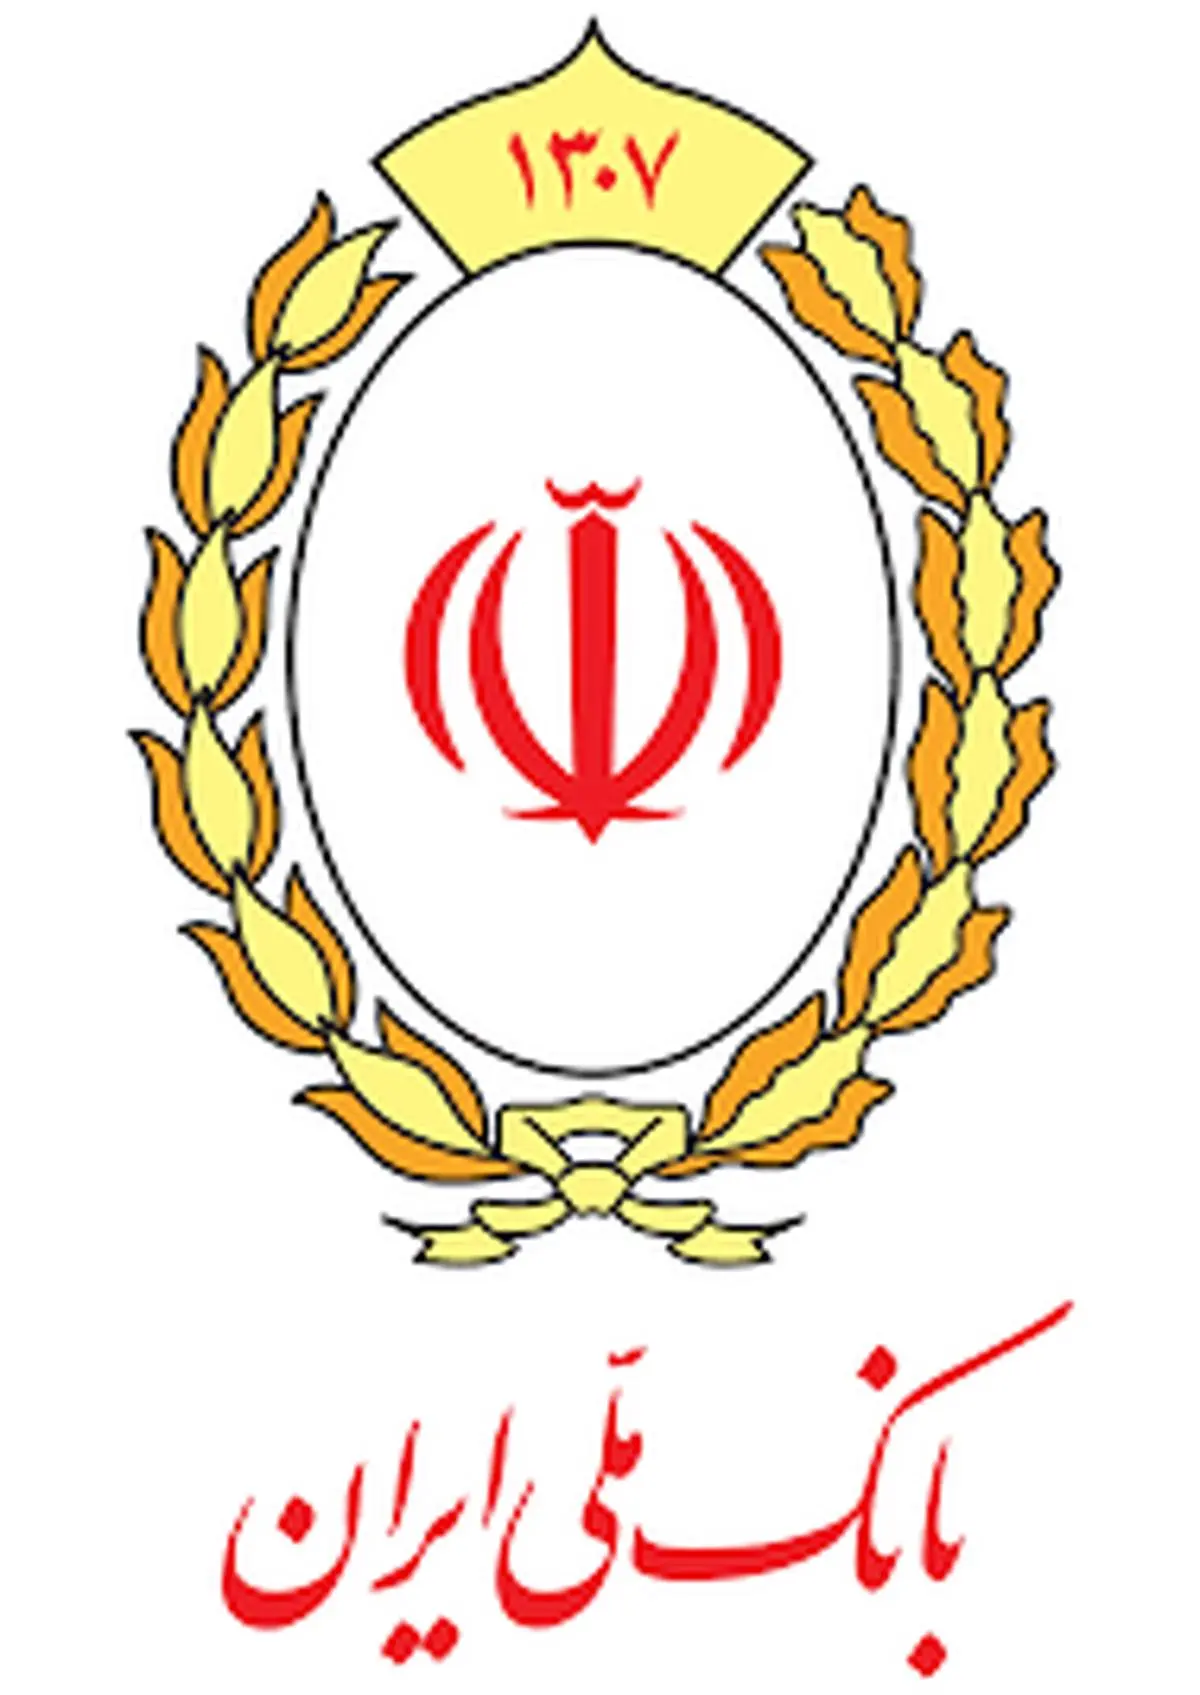 بانکداری الکترونیک بانک ملی ایران، راهی مطمئن برای مقابله با کرونا
